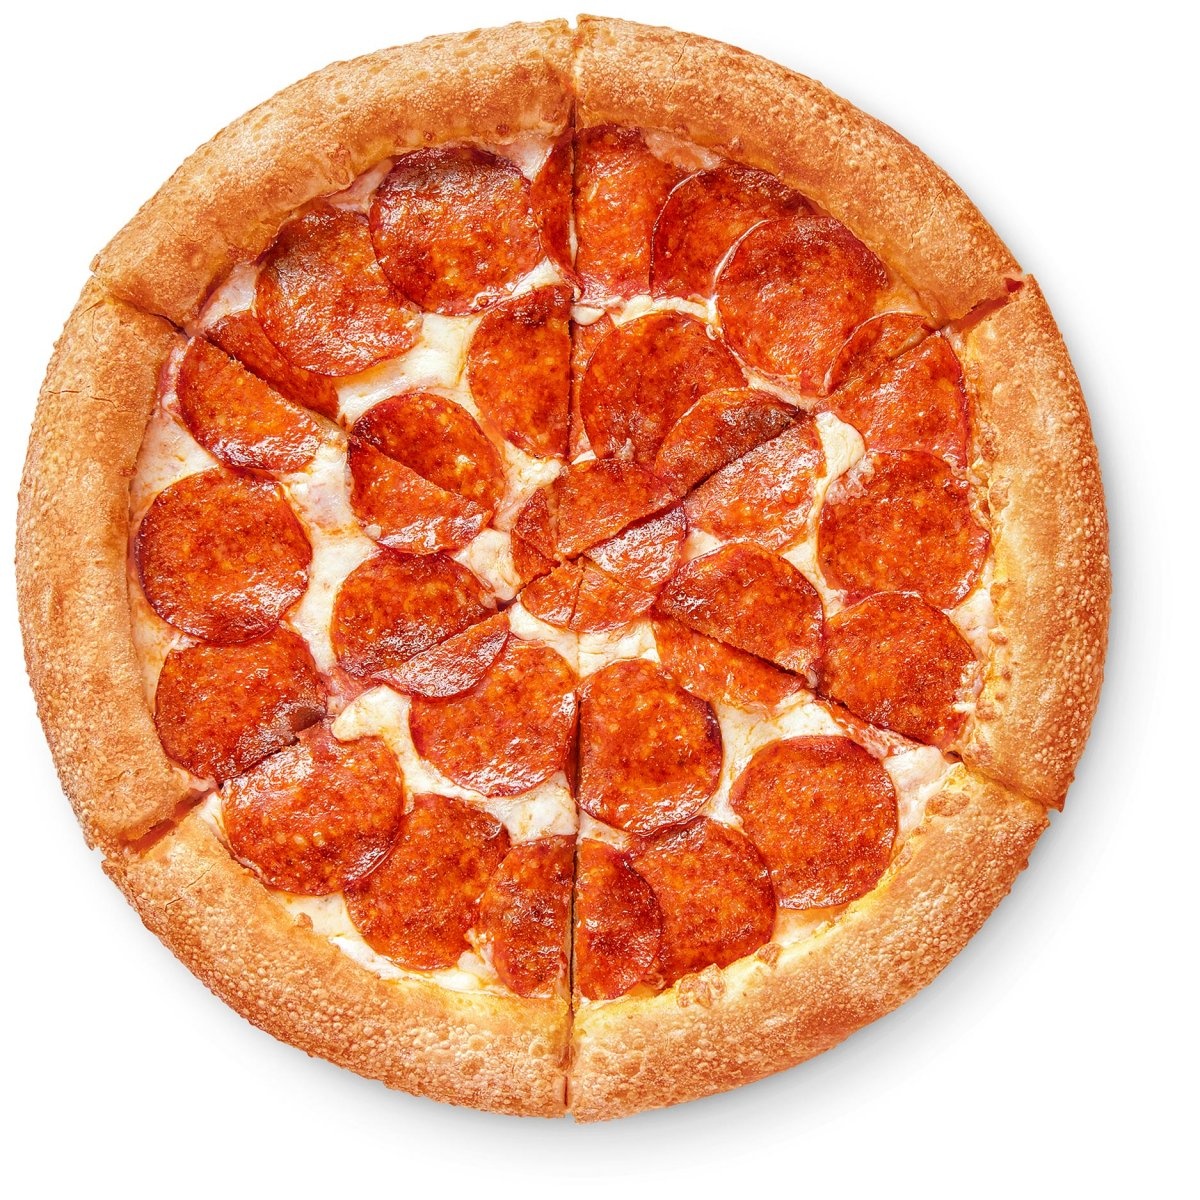 сколько калорий в куске пиццы пепперони додо фото 87